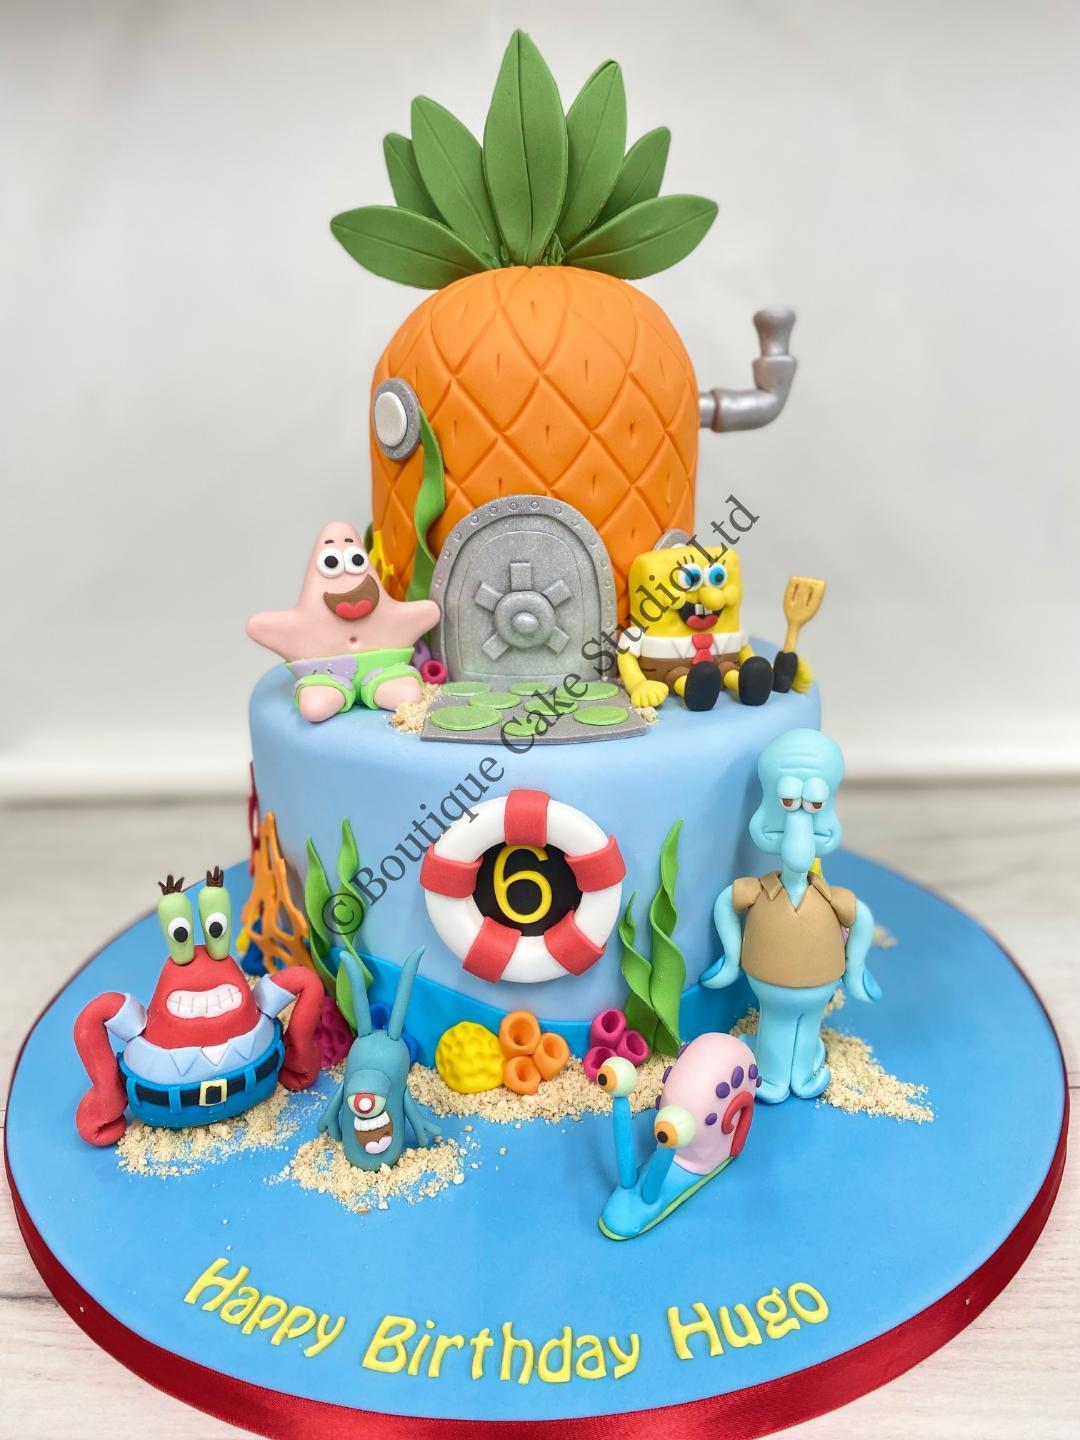 Sponge Bob Square Pants themed Cake